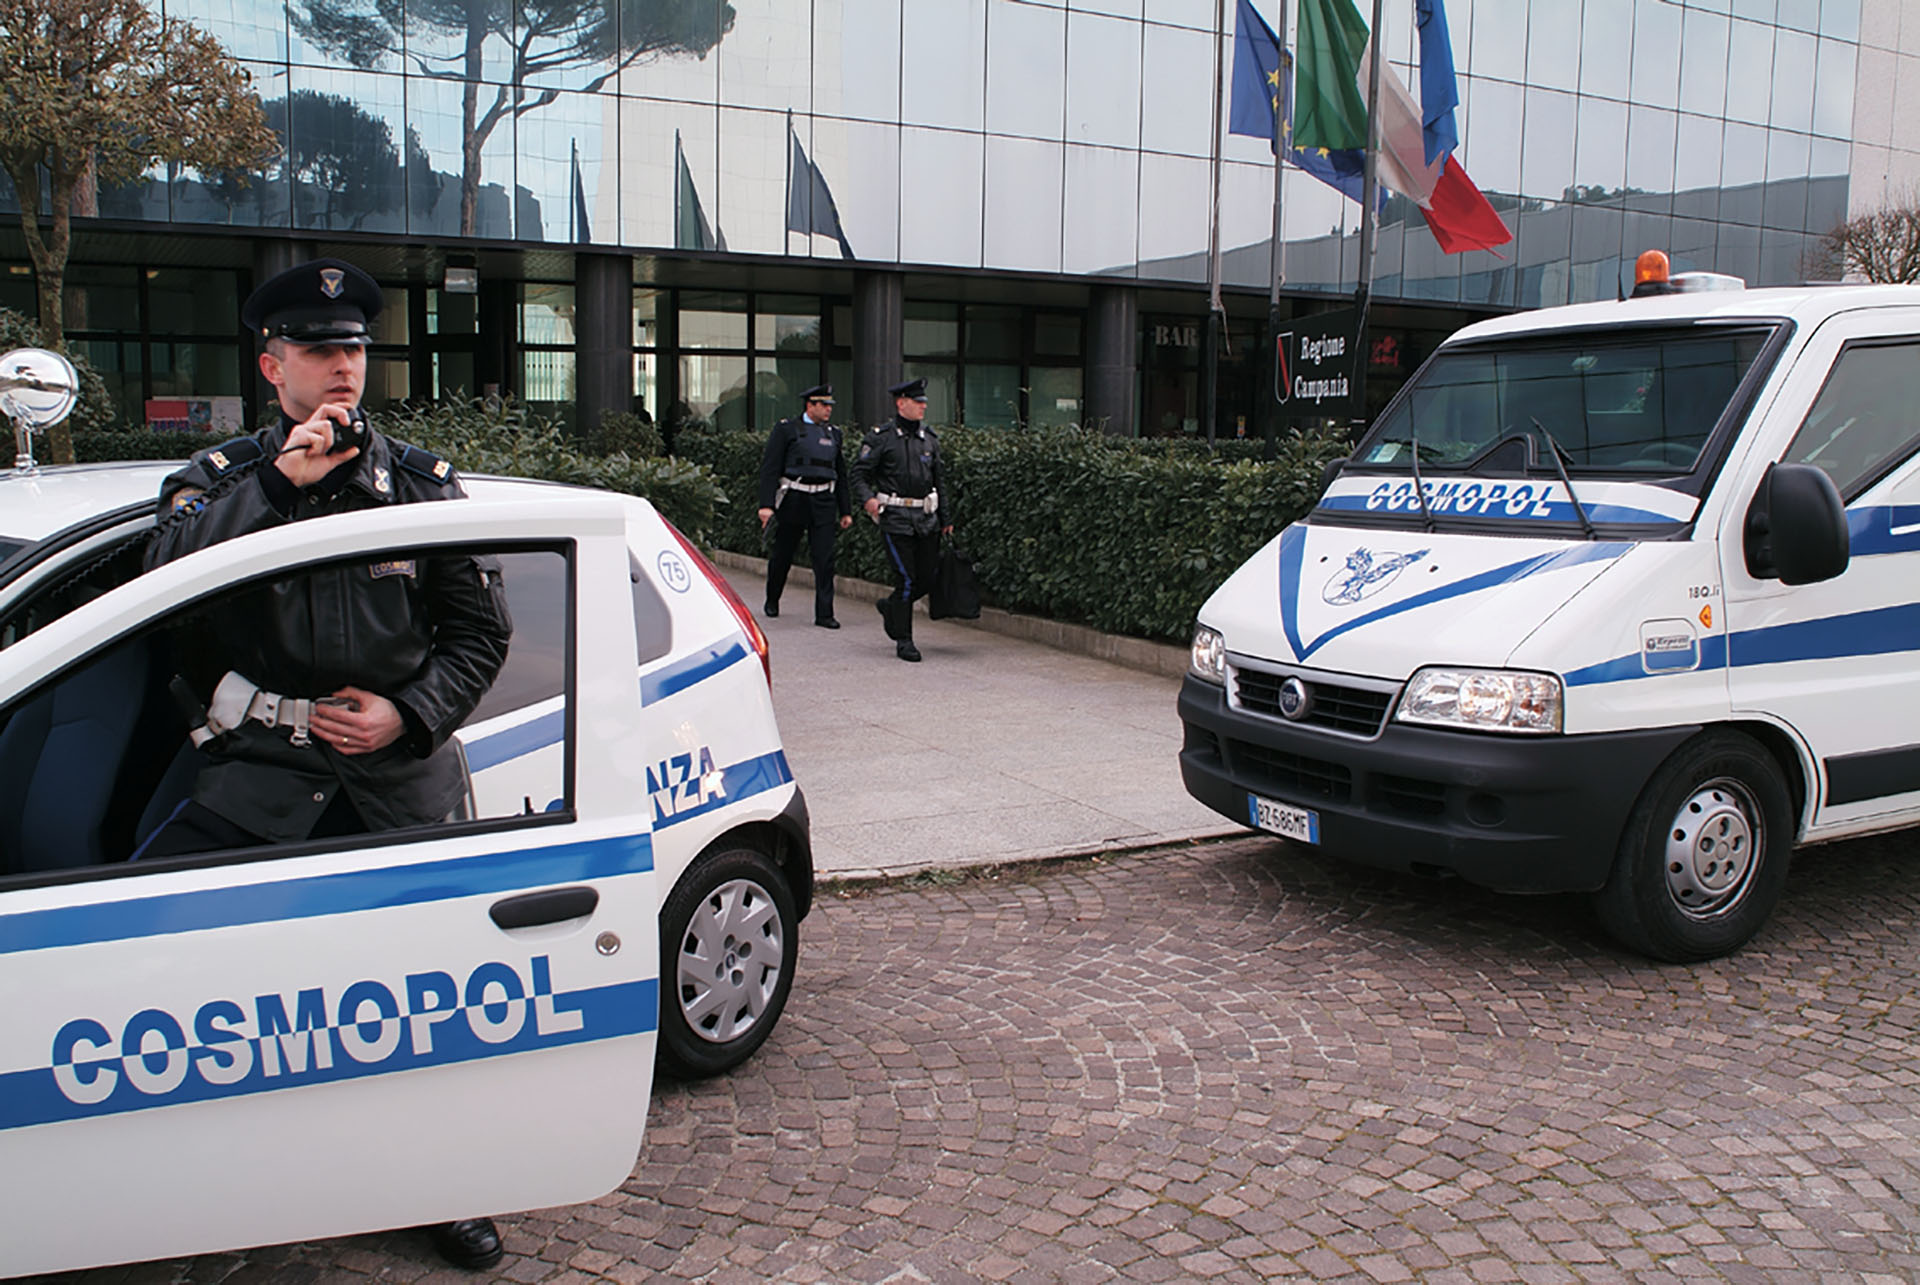 Guardie giurate di Cosmopol in sciopero: domani scoperte numerose sedi strategiche per la sicurezza